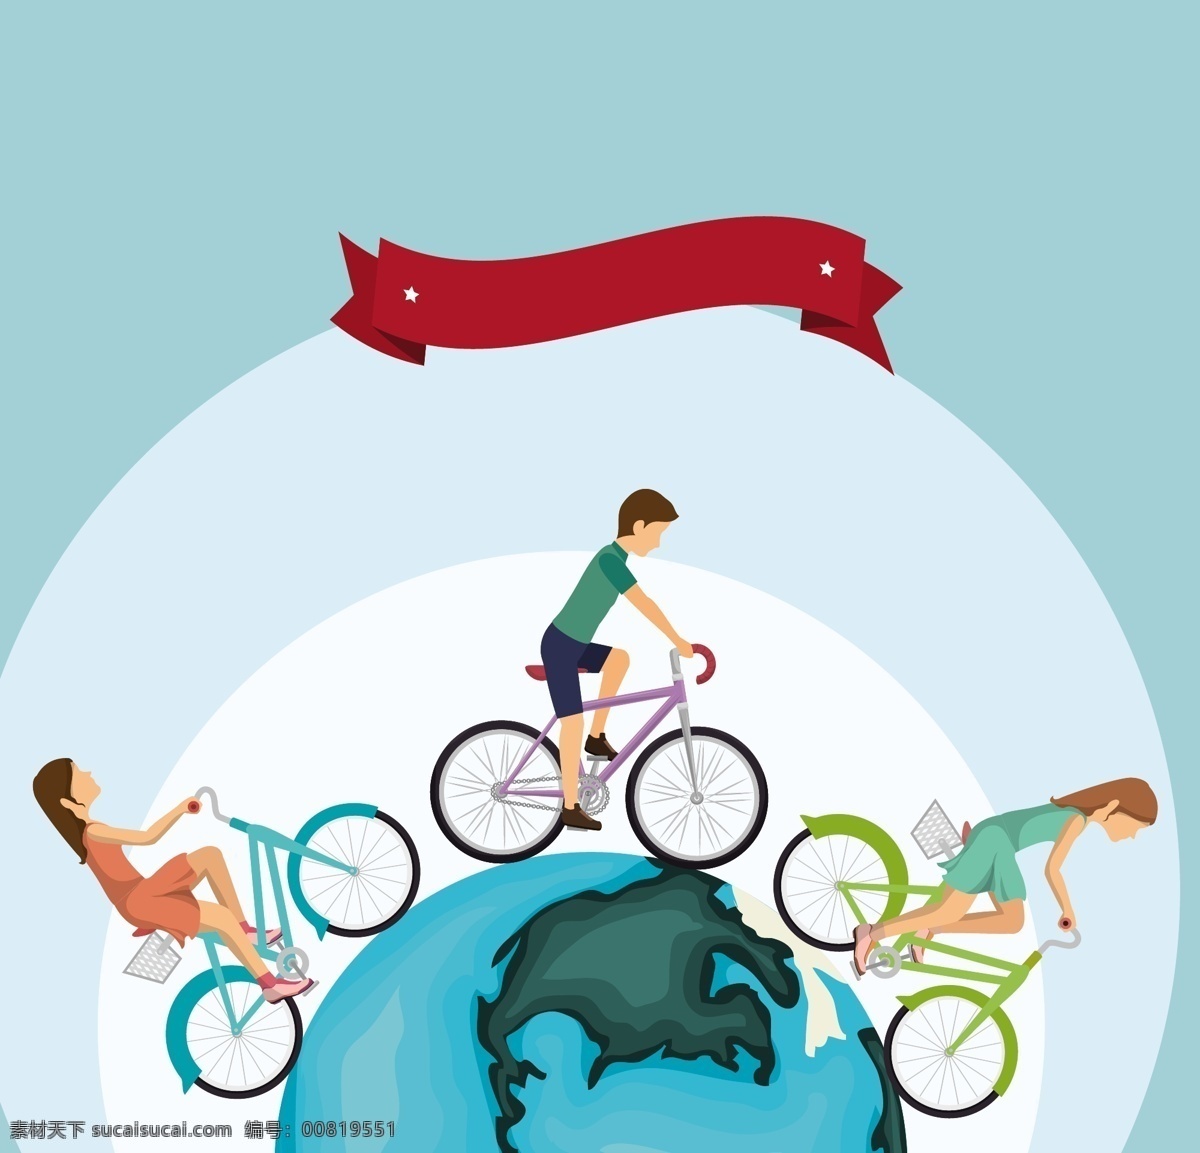 自行车 人物 矢量 背景 地球 骑手 健身运动 绸带 标识 矢量素材 生活方式 倡导 健康 低碳环保